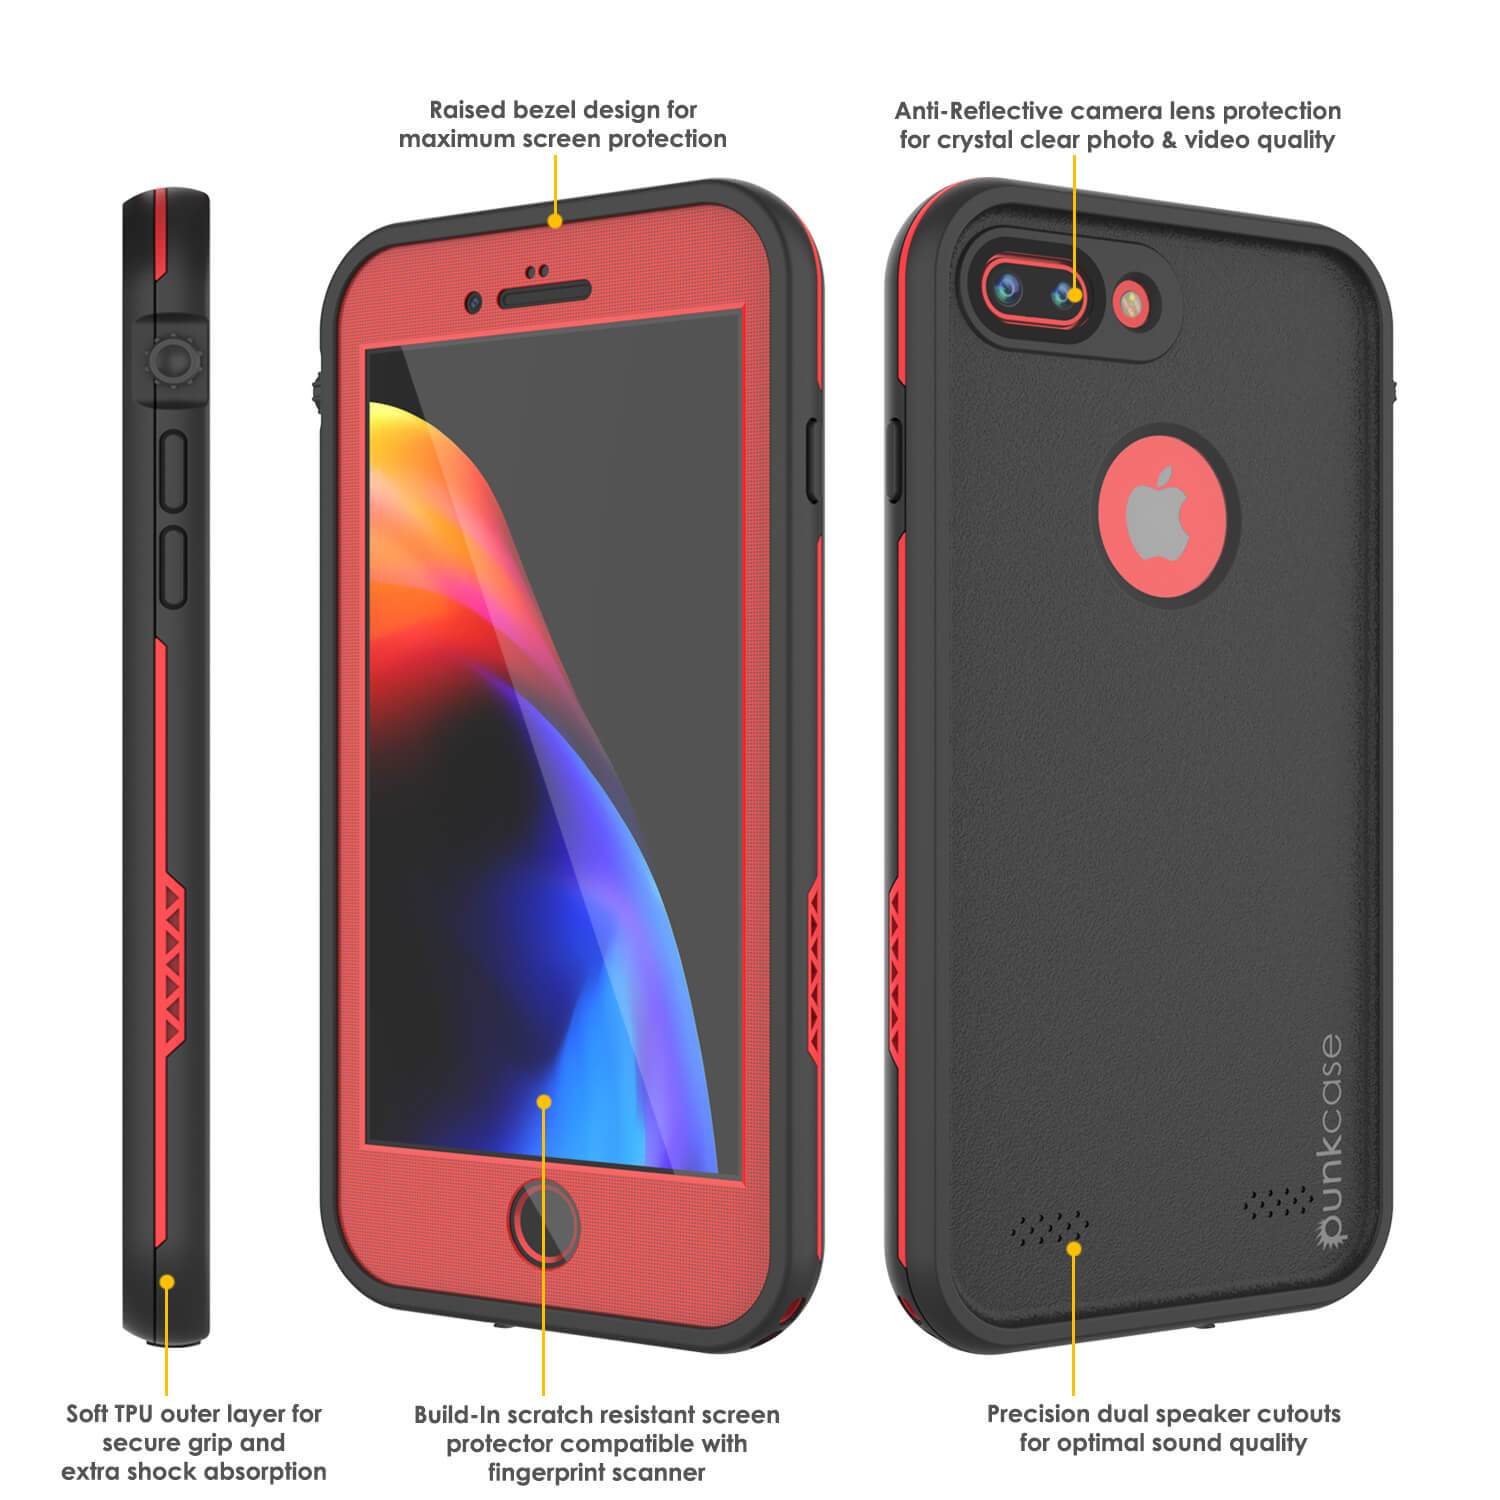 iPhone 8 Plus Waterproof Case, Punkcase SpikeStar Series [Red]